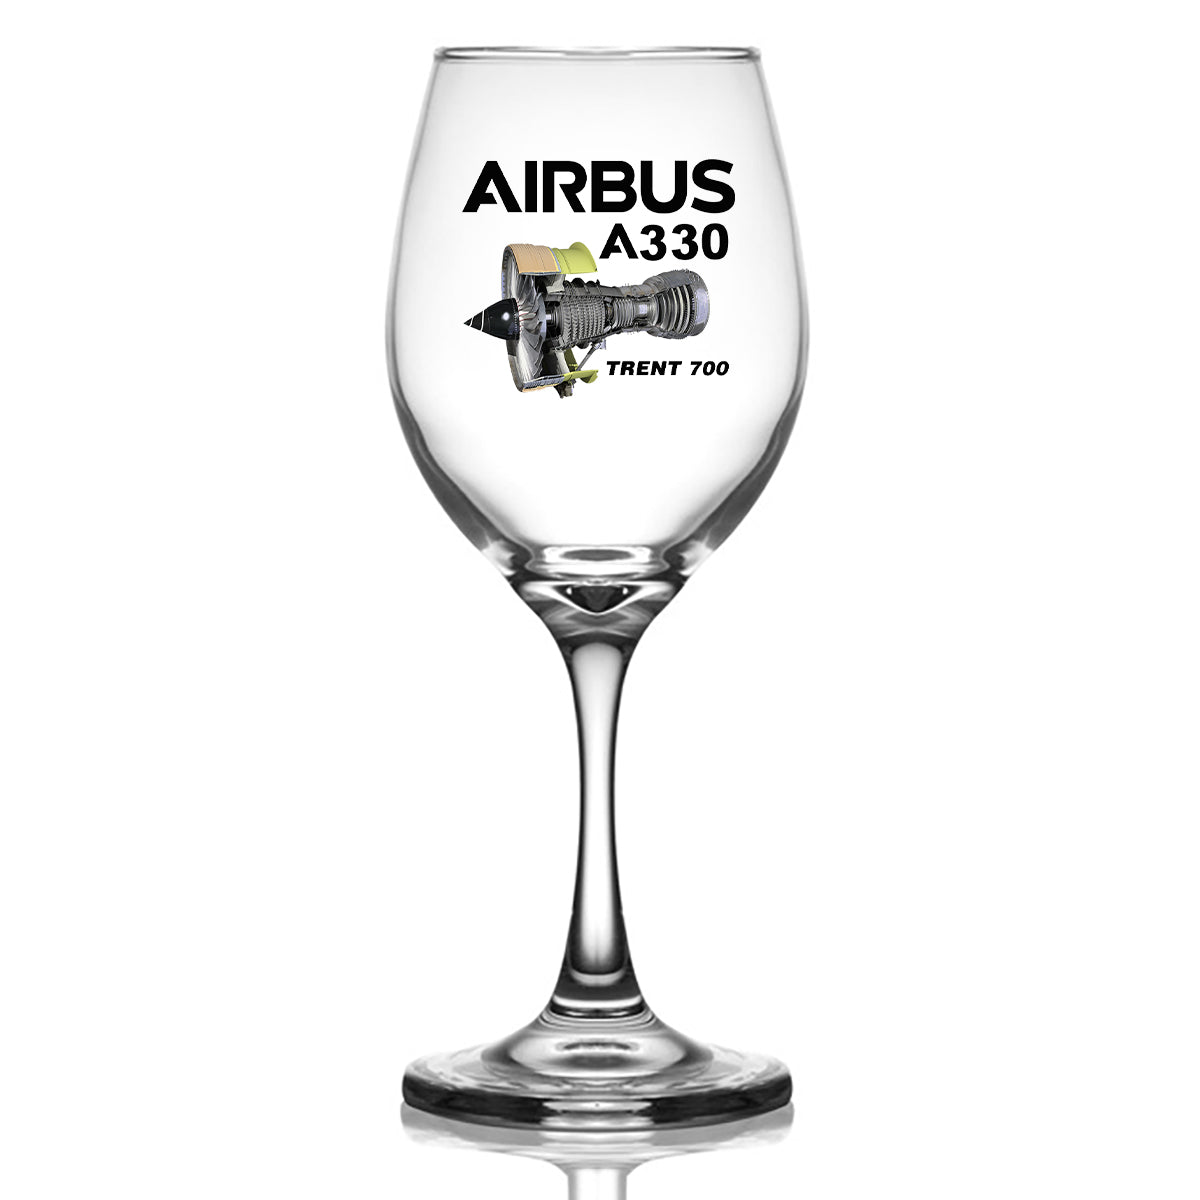 Airbus A330 & Trent 700 Engine Designed Wine Glasses